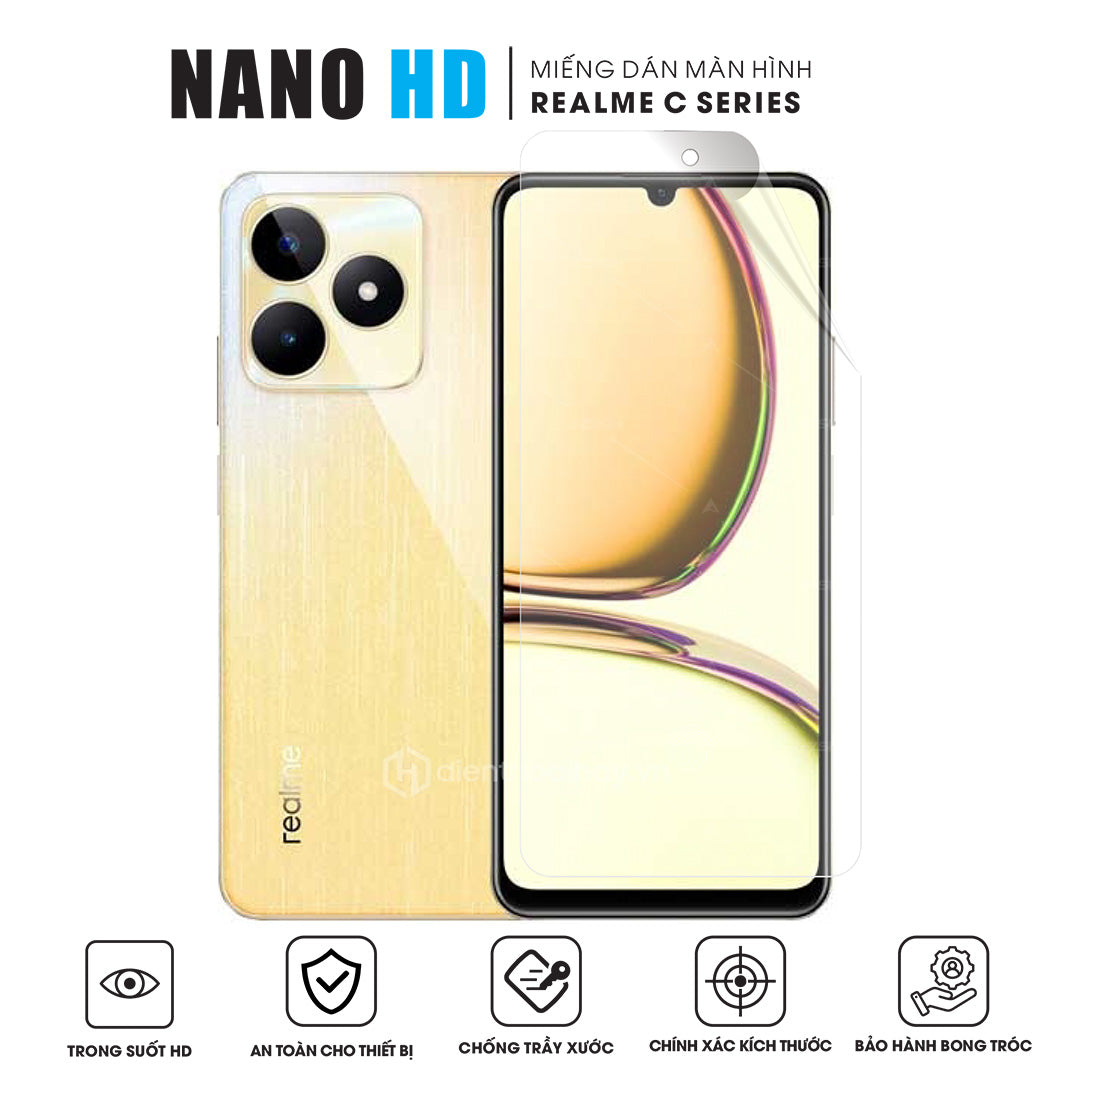 Miếng dán màn hình điện thoại Realme C Series NANO HD